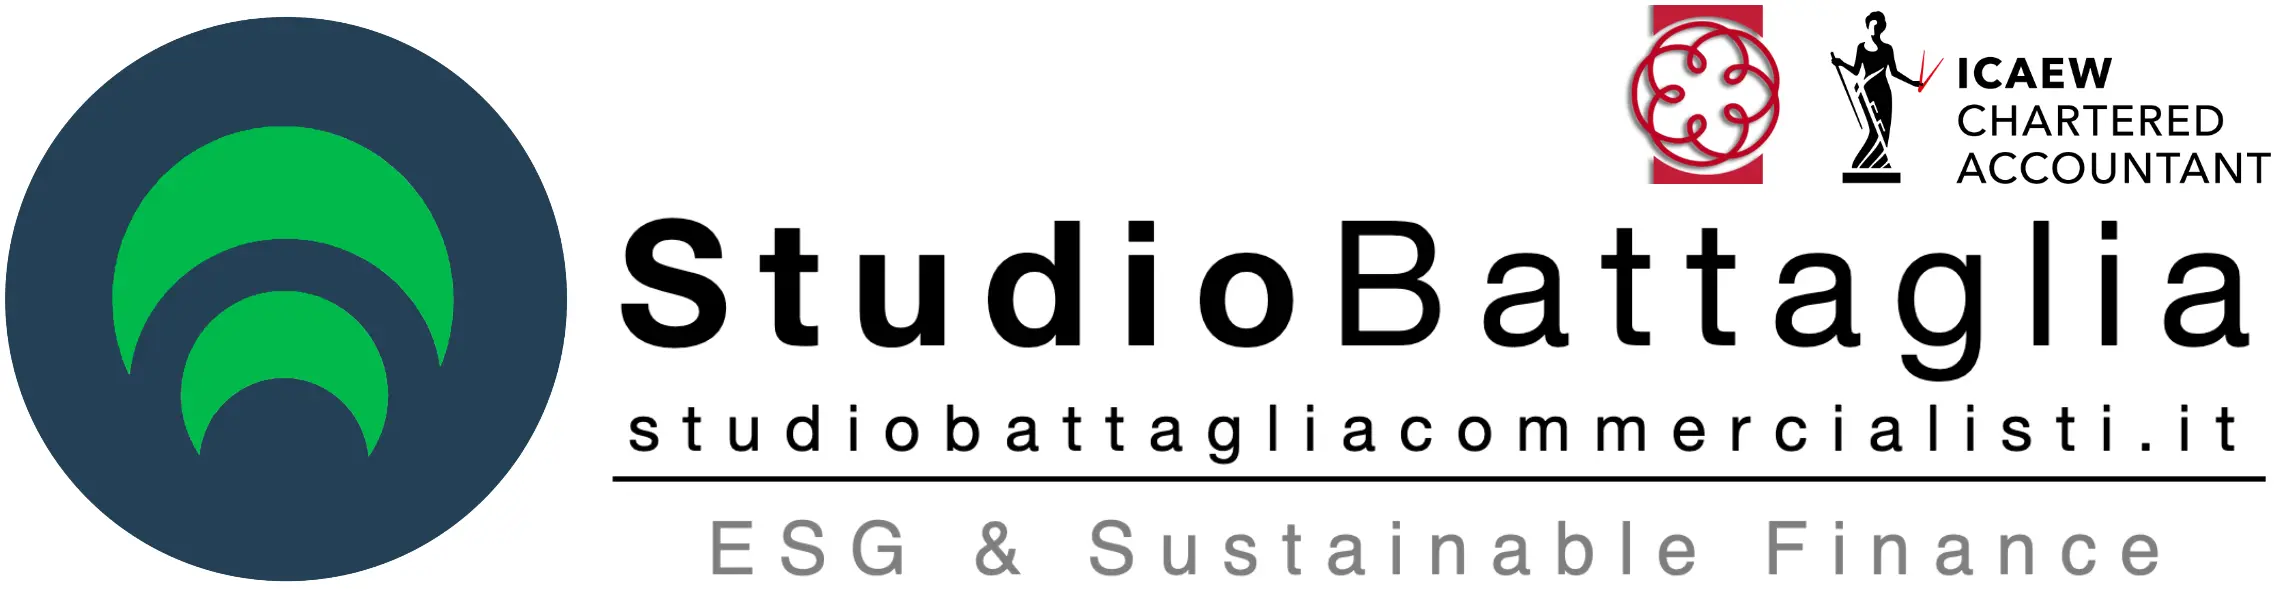 Studio Battaglia Commercialisti | CPMI